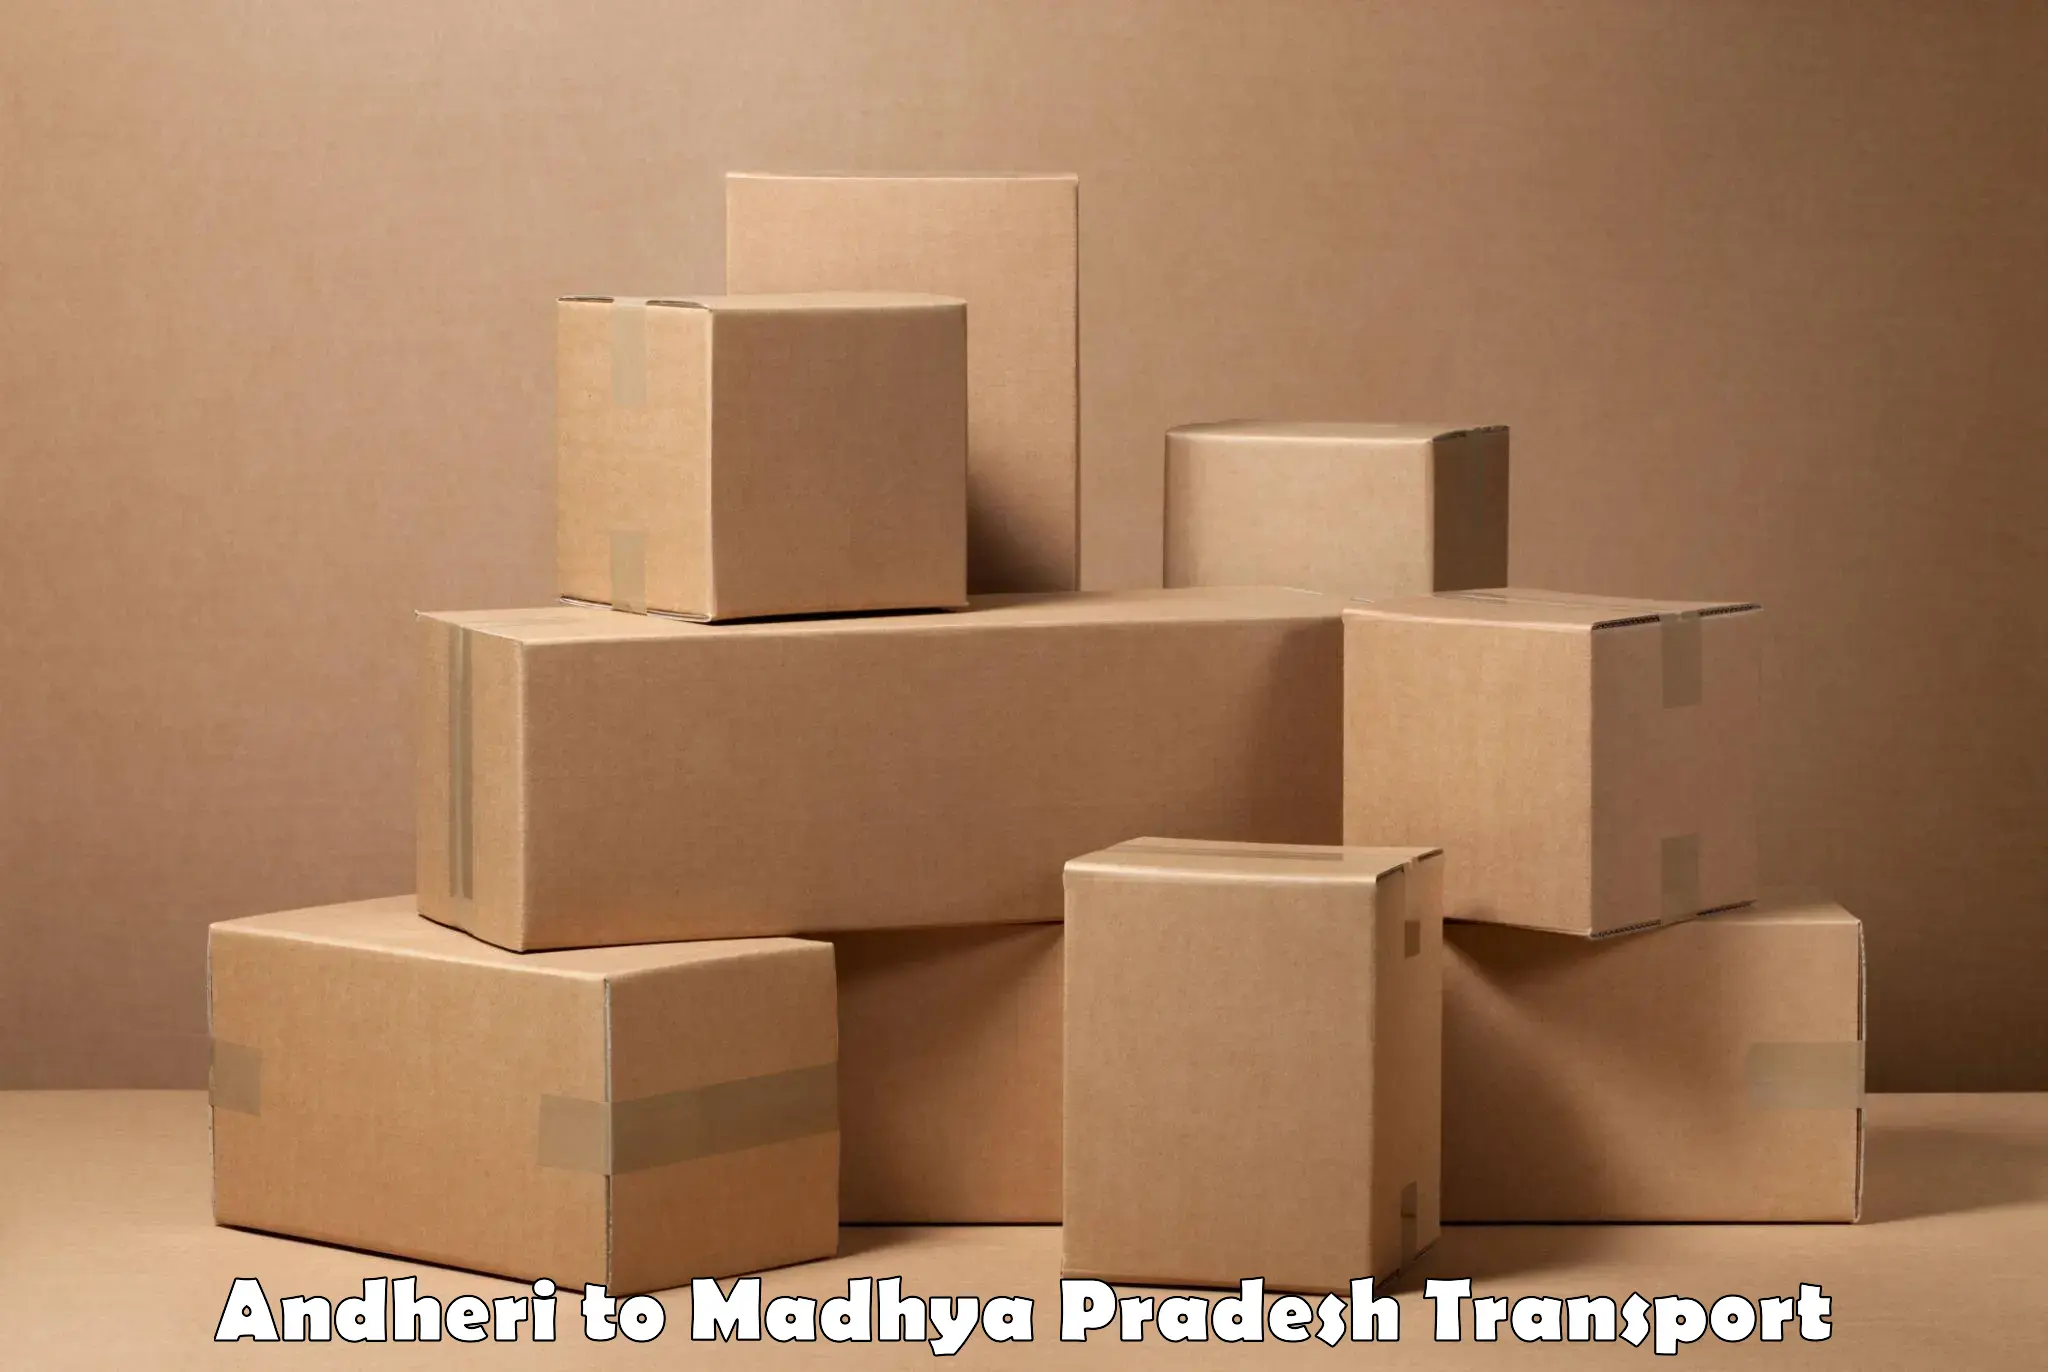 Furniture transport service Andheri to Nagod